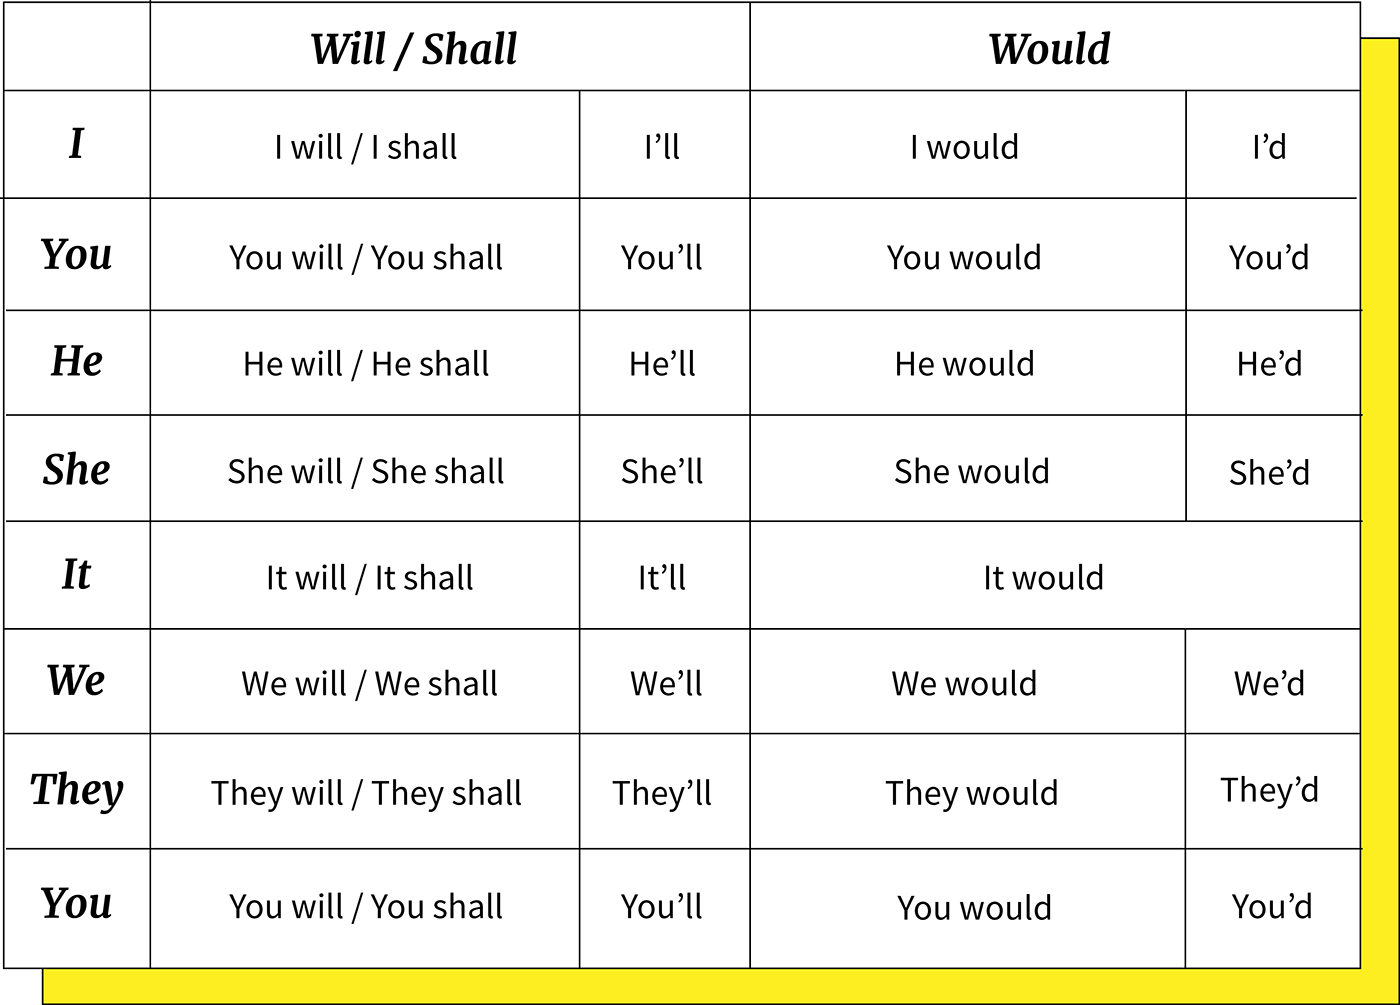 Exemplo de imagem das contrações dos verbos Will, Shall and Would.